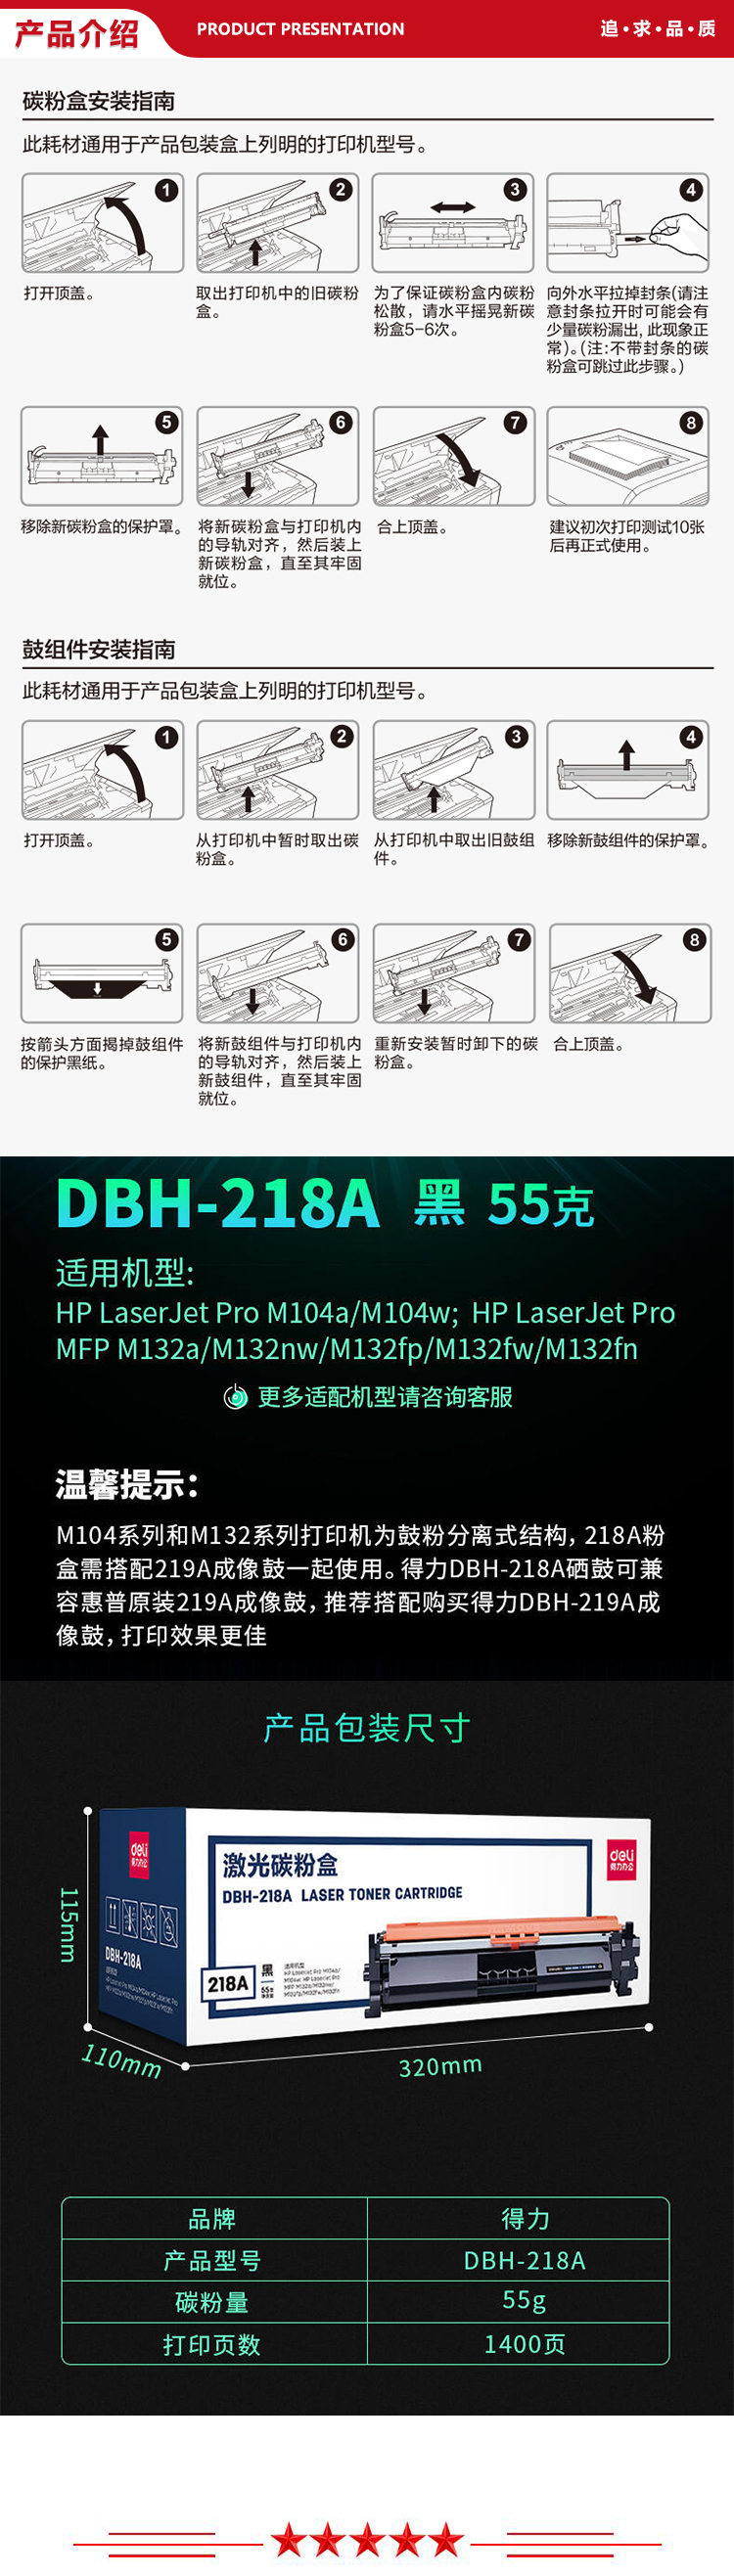 DBH-218A-.jpg